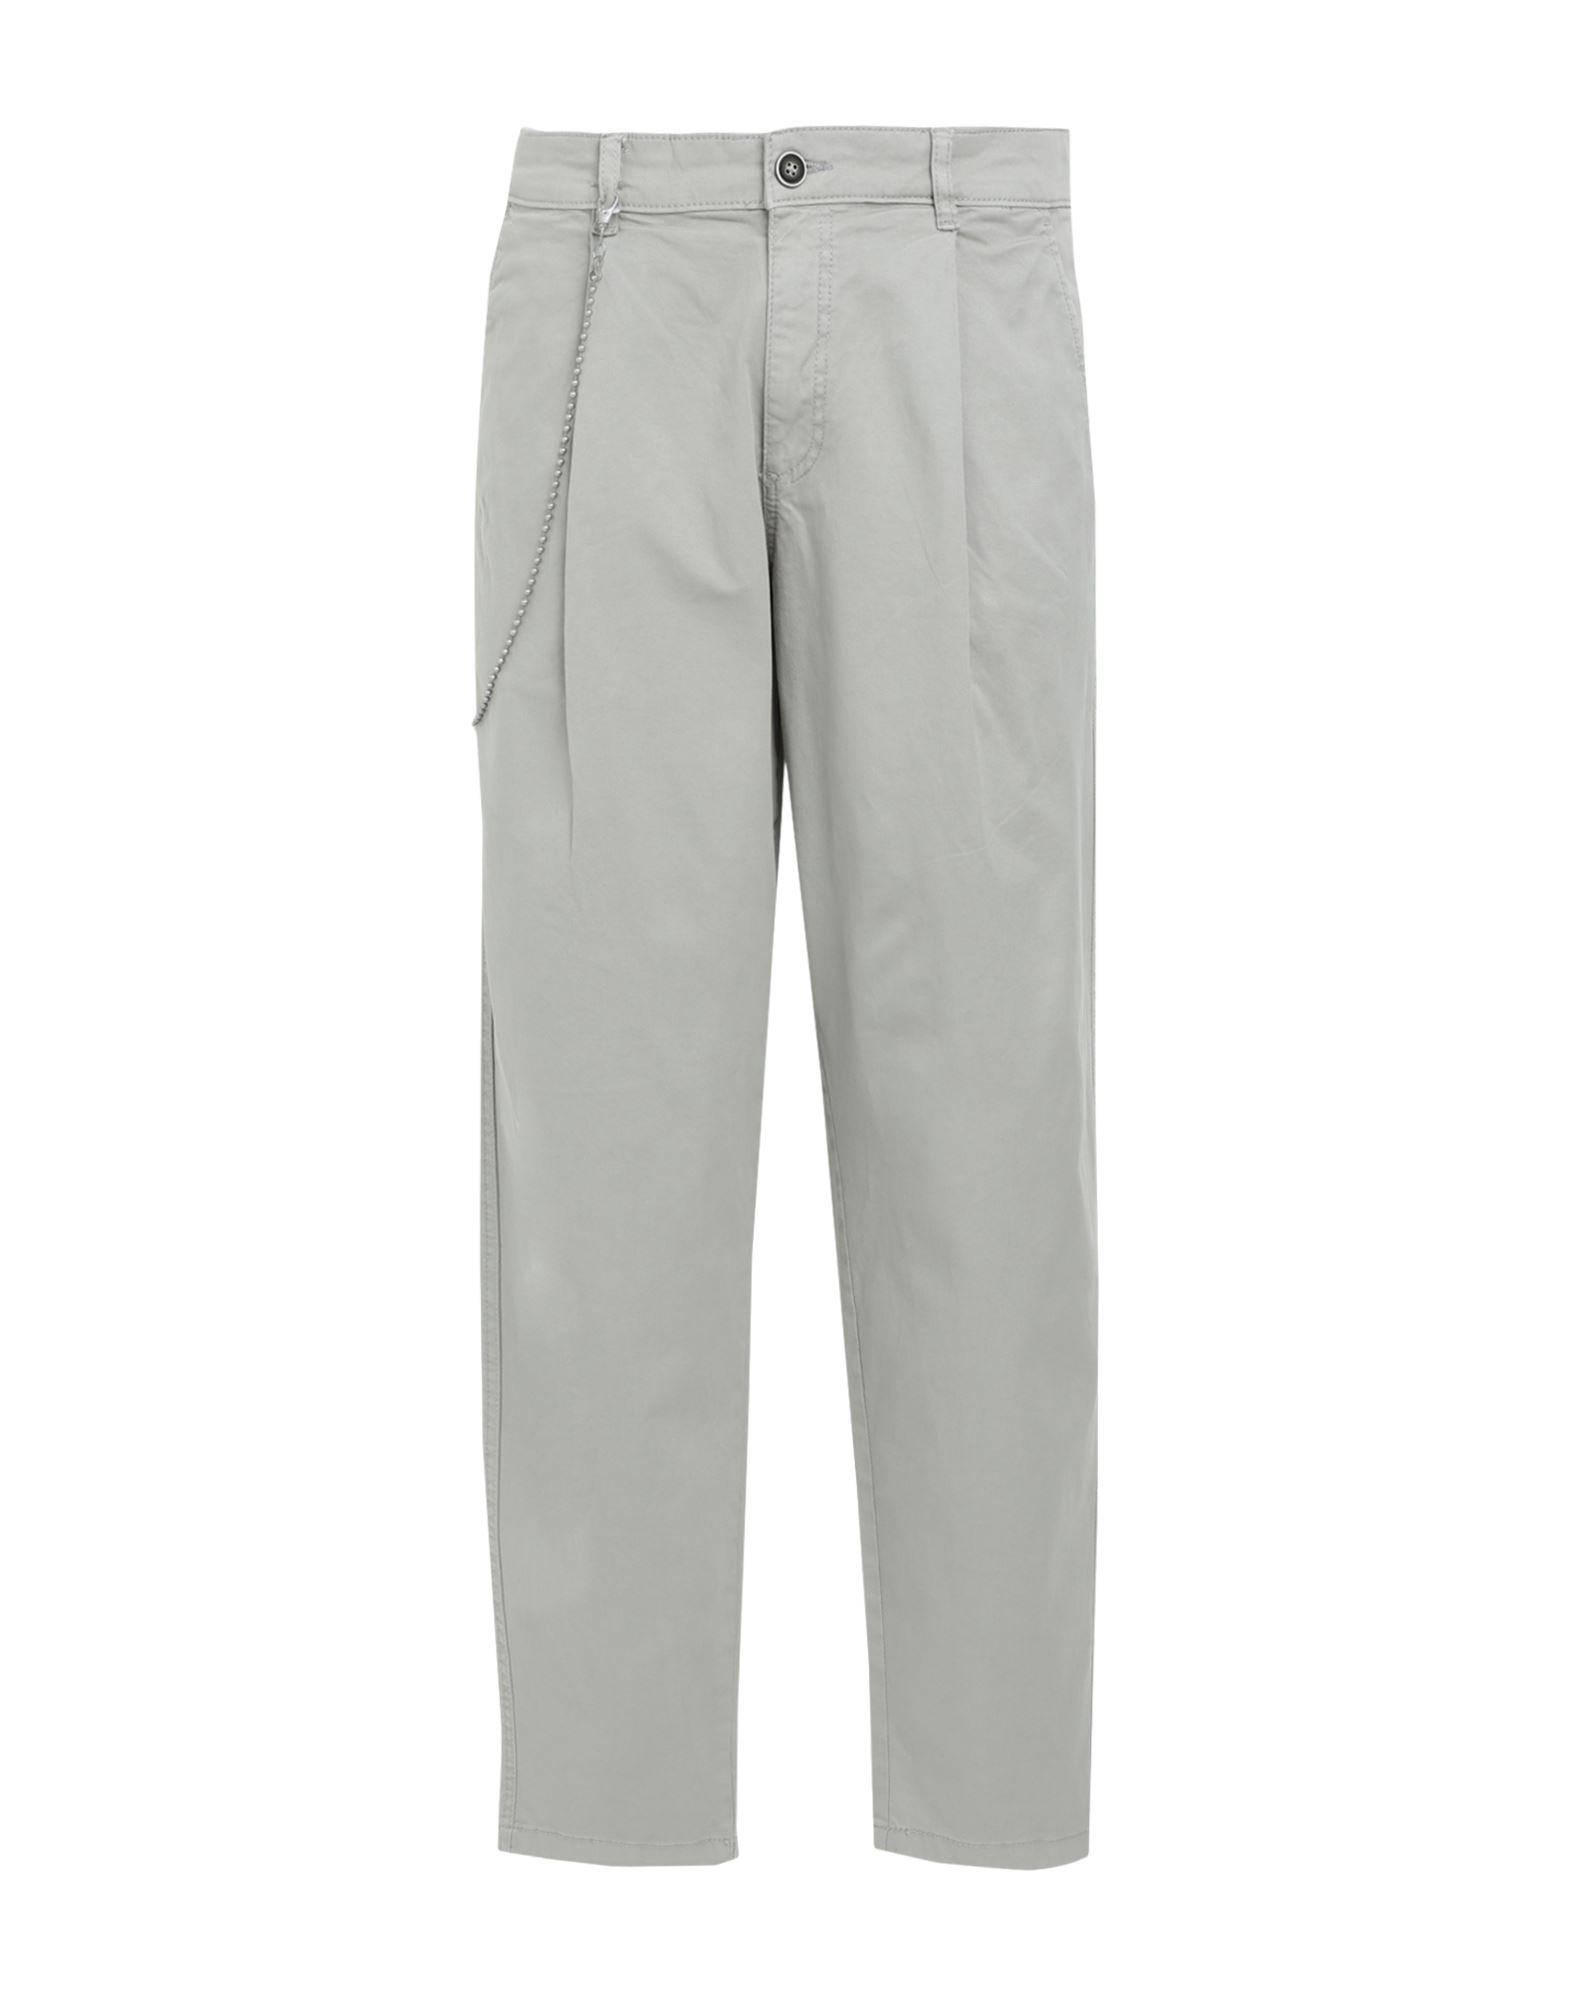 Shop Jack & Jones Man Pants Sage Green Size 33w-34l Cotton, Elastane